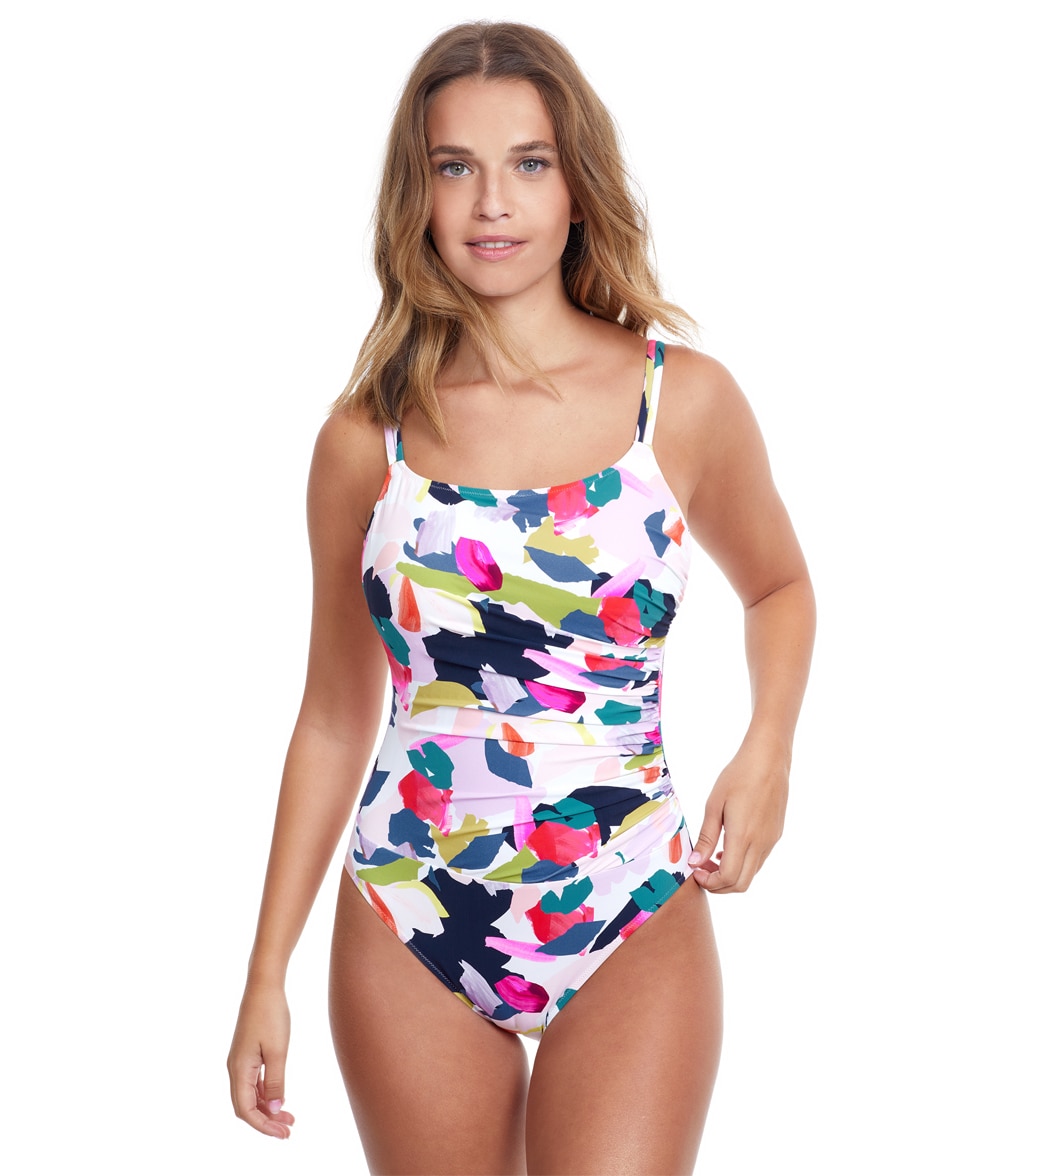 Profile By Gottex Women's Canvas Scoop Neck Once Piece Swimsuit D Cup - Multi 8D - Swimoutlet.com